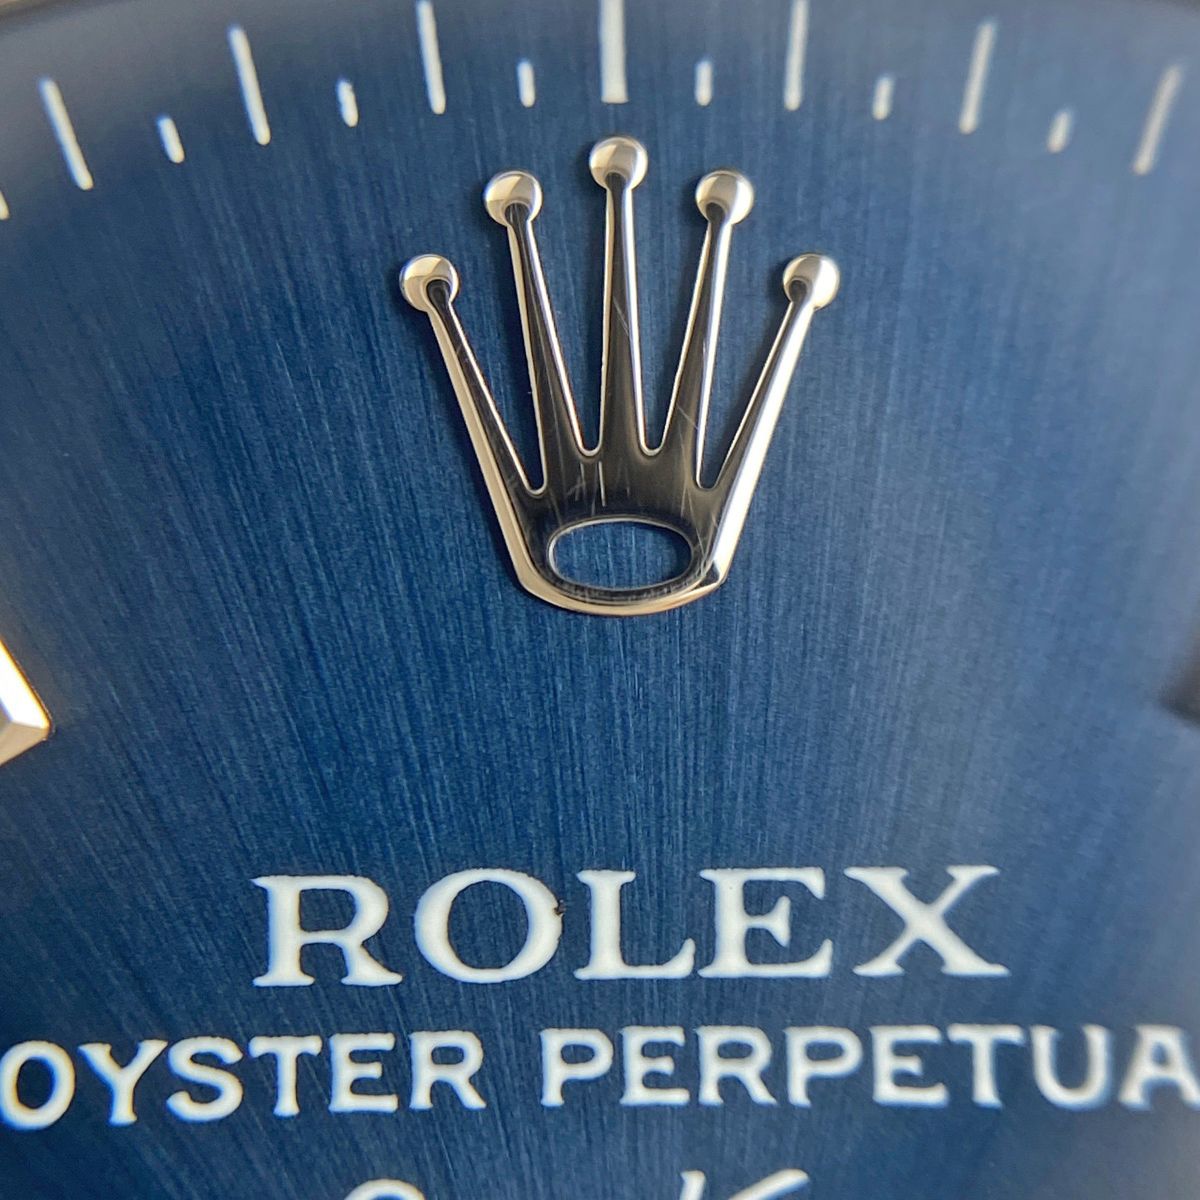 ロレックス ROLEX エアキング プレシジョン 14000 腕時計 SS 自動巻き ブルー ボーイズ 【中古】